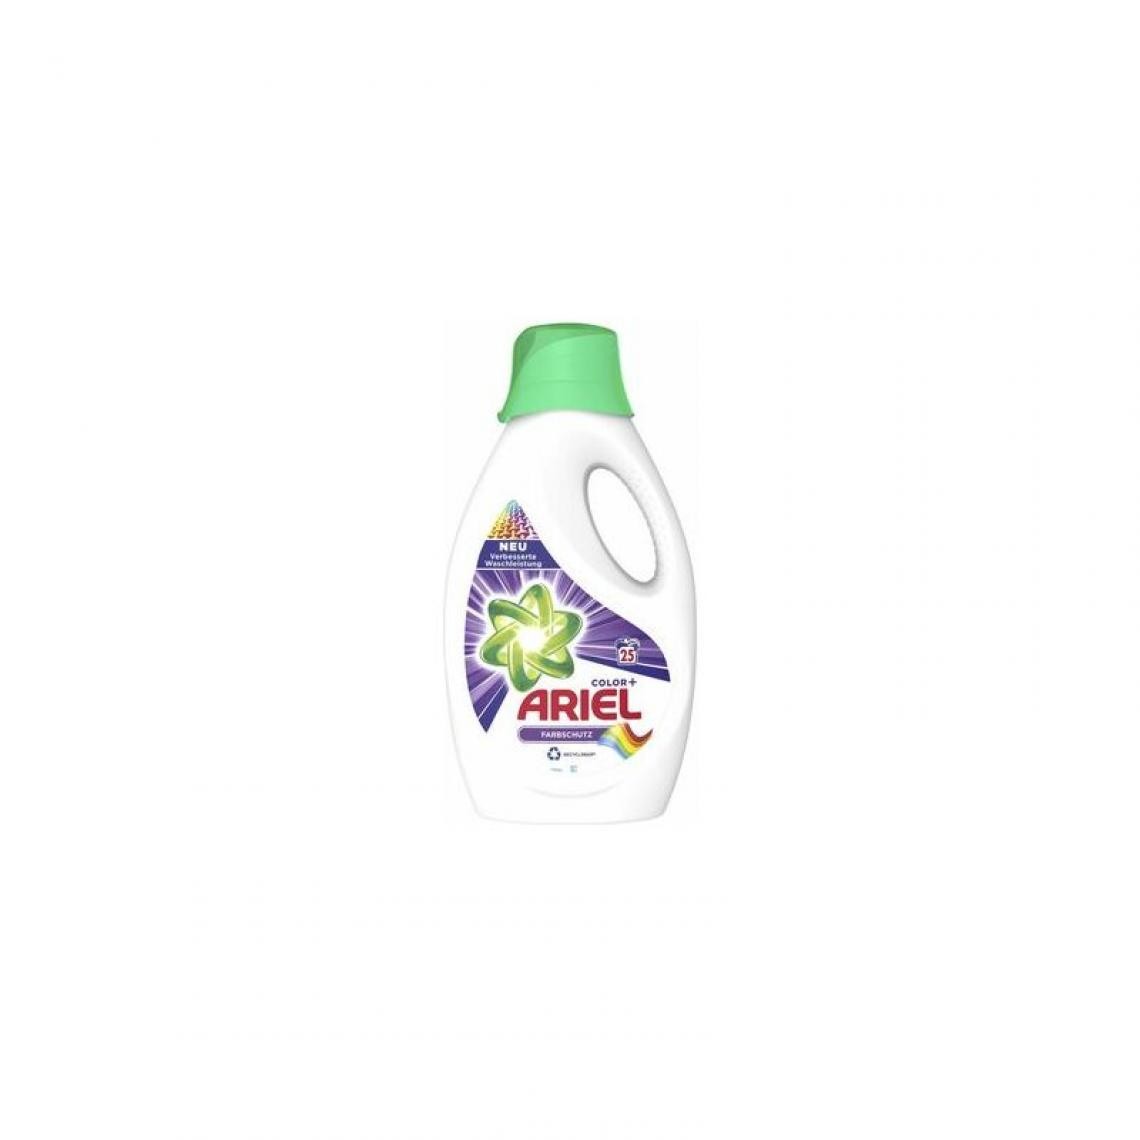 Ariel - ARIEL Lessive liquide Color, 1,375 litre, 25 lavages () - Cuisine et ménage